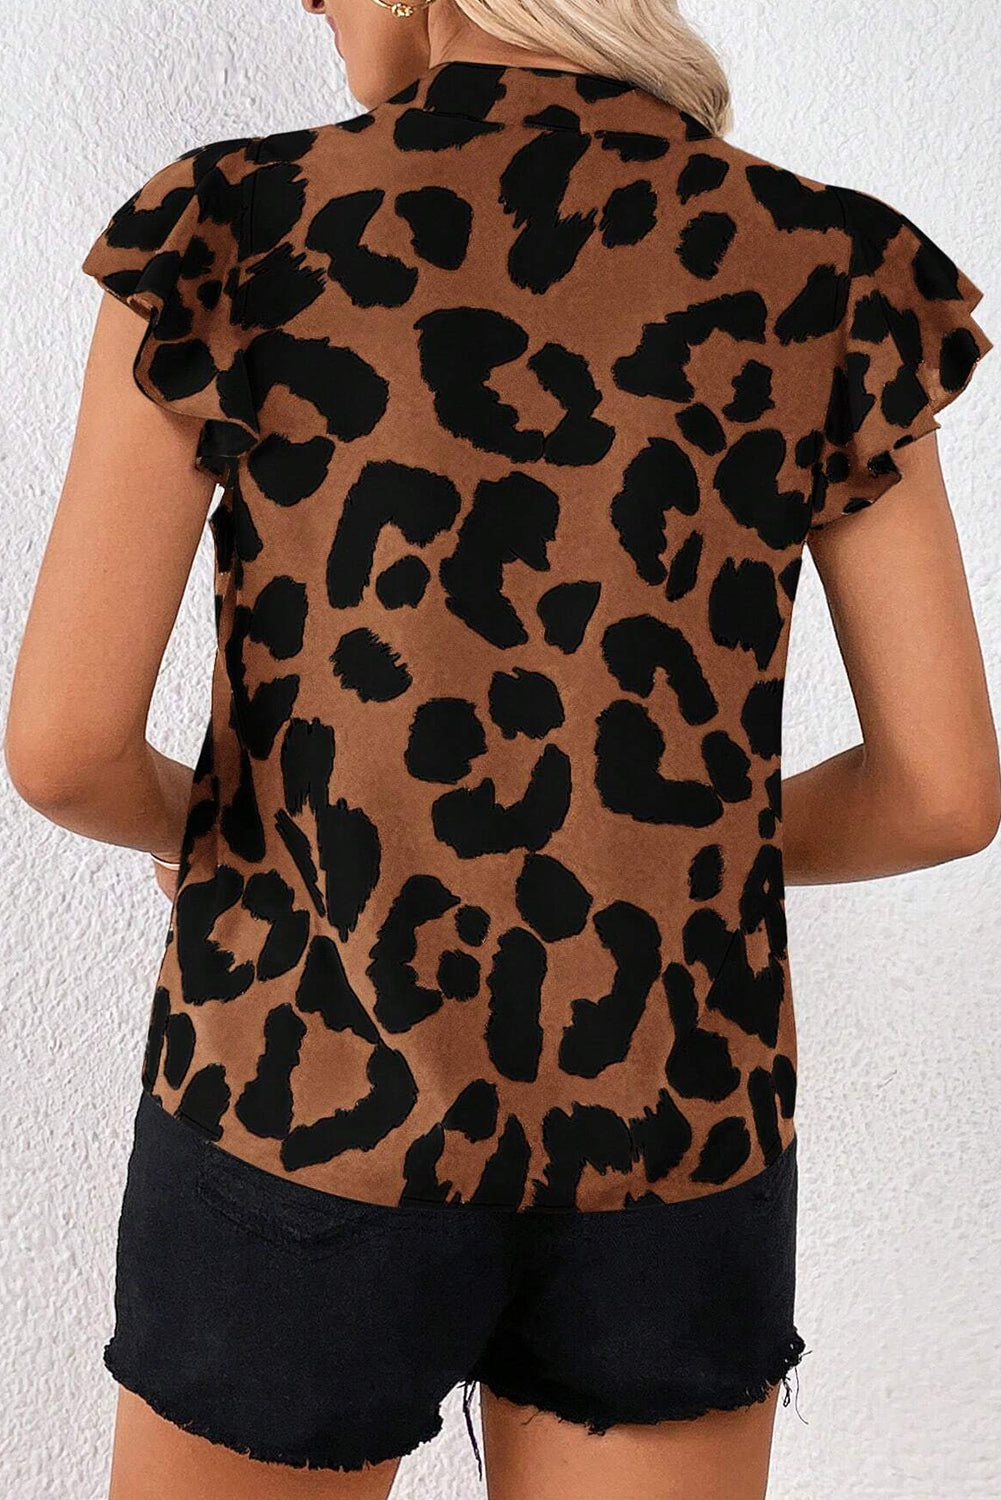 Rjava leopardja bluza s plapolastimi rokavi in ​​razcepljenim ovratnikom